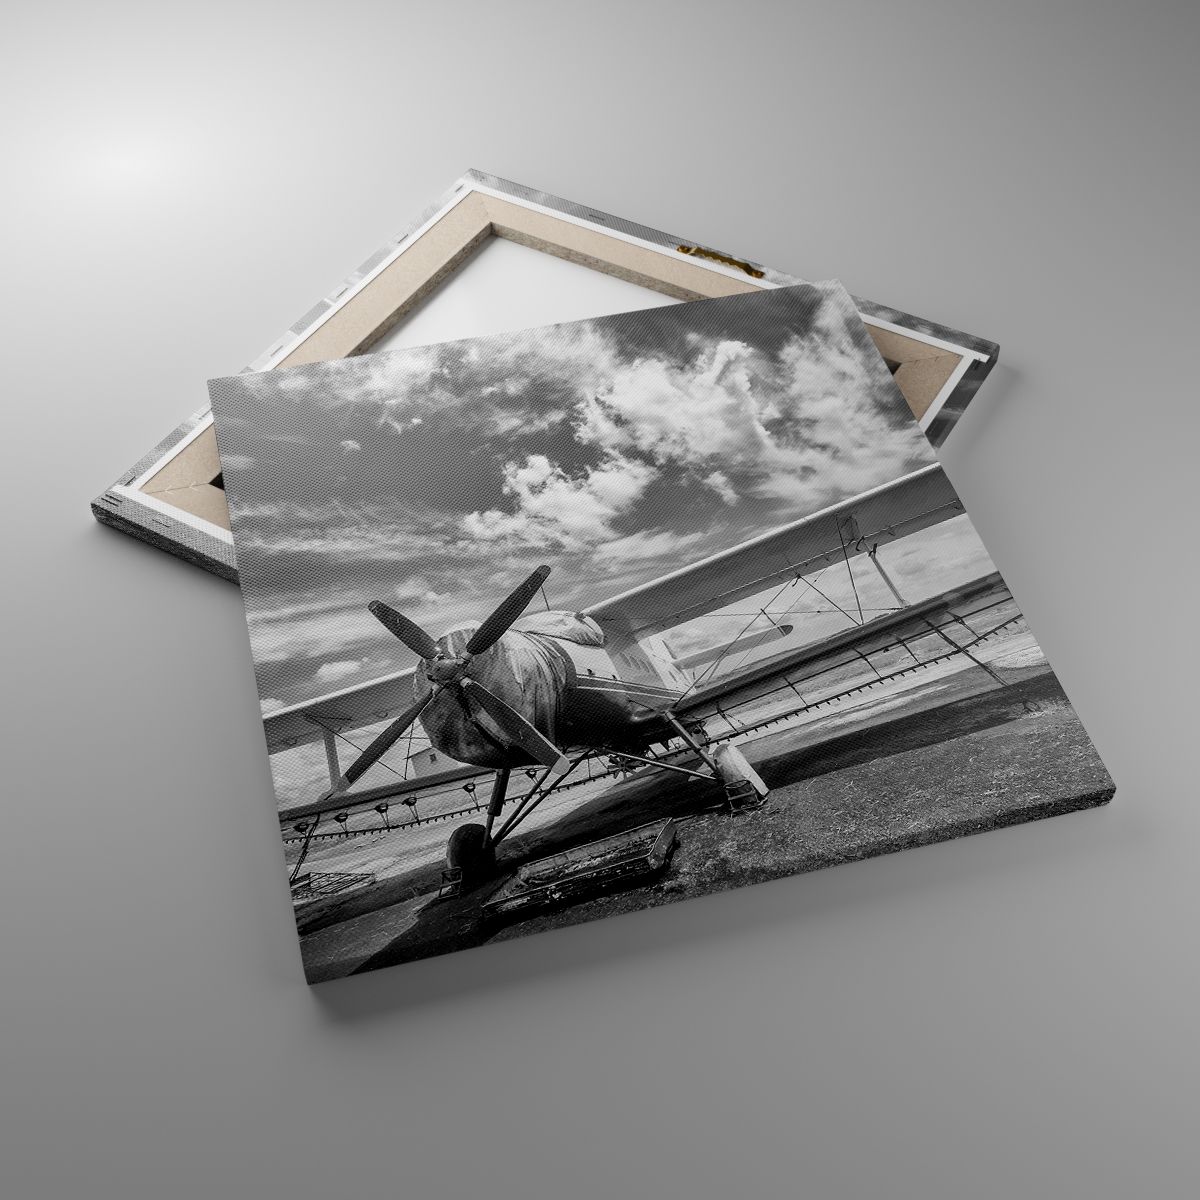 Obrazy Samolot, Obrazy Lotnictwo, Obrazy Czarno-Biały, Obrazy Vintage, Obrazy Śmigło